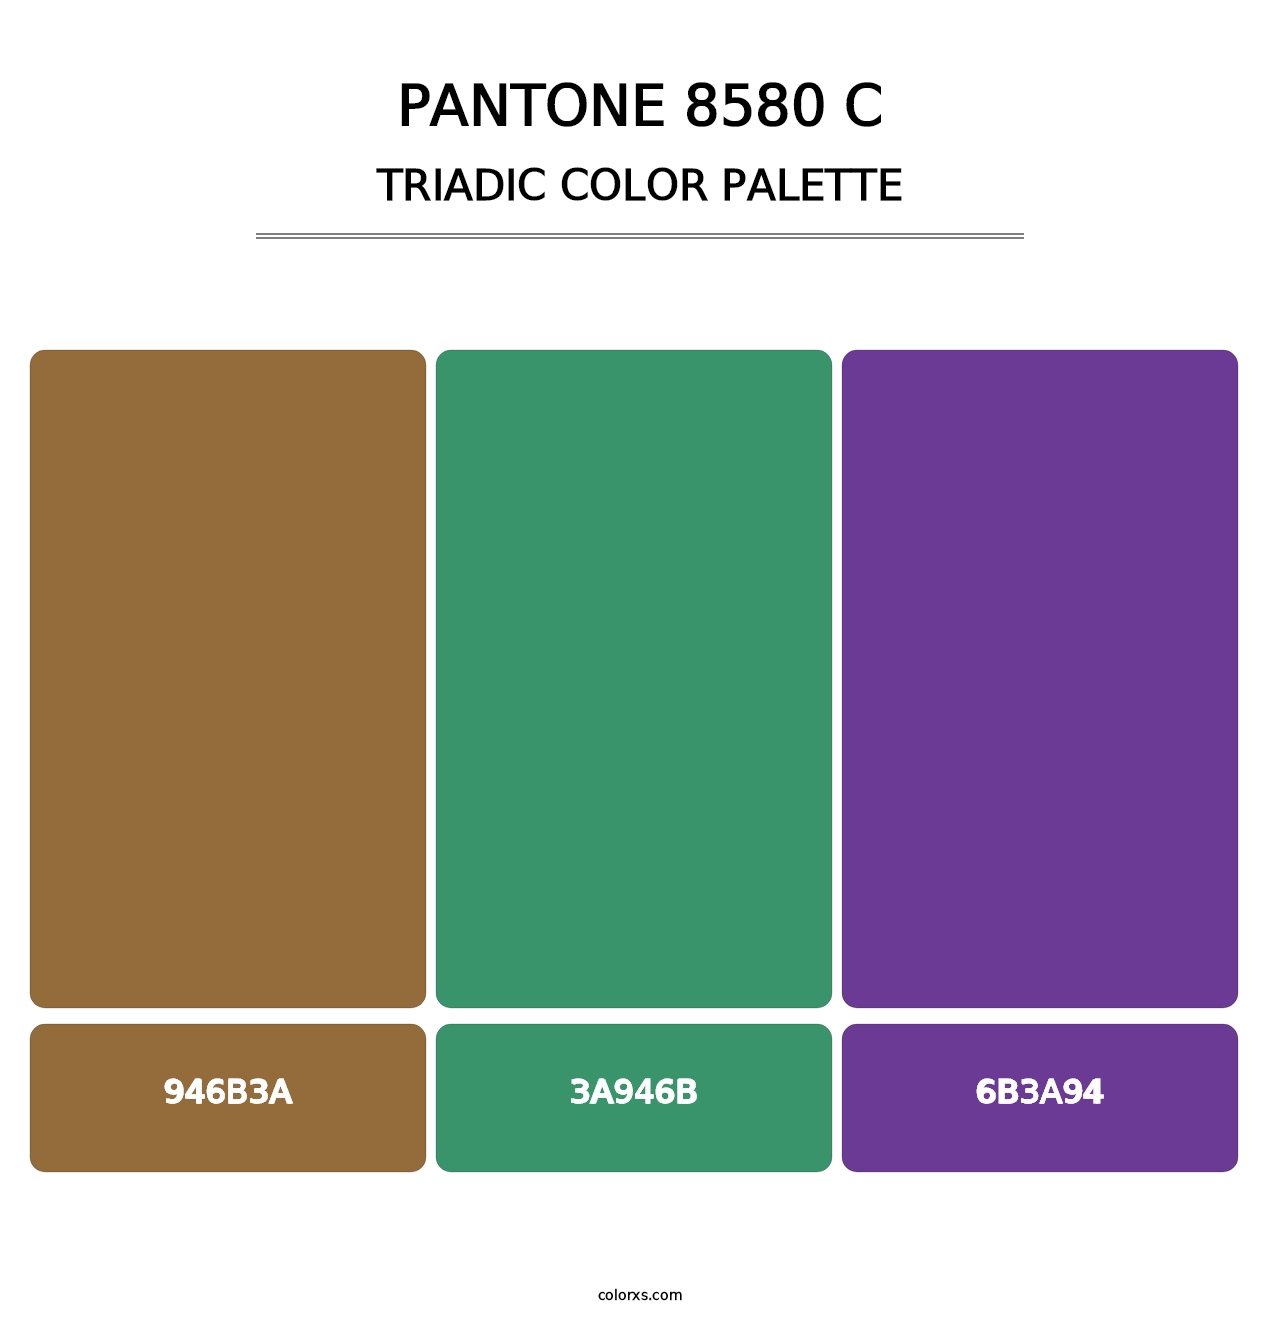 PANTONE 8580 C - Triadic Color Palette